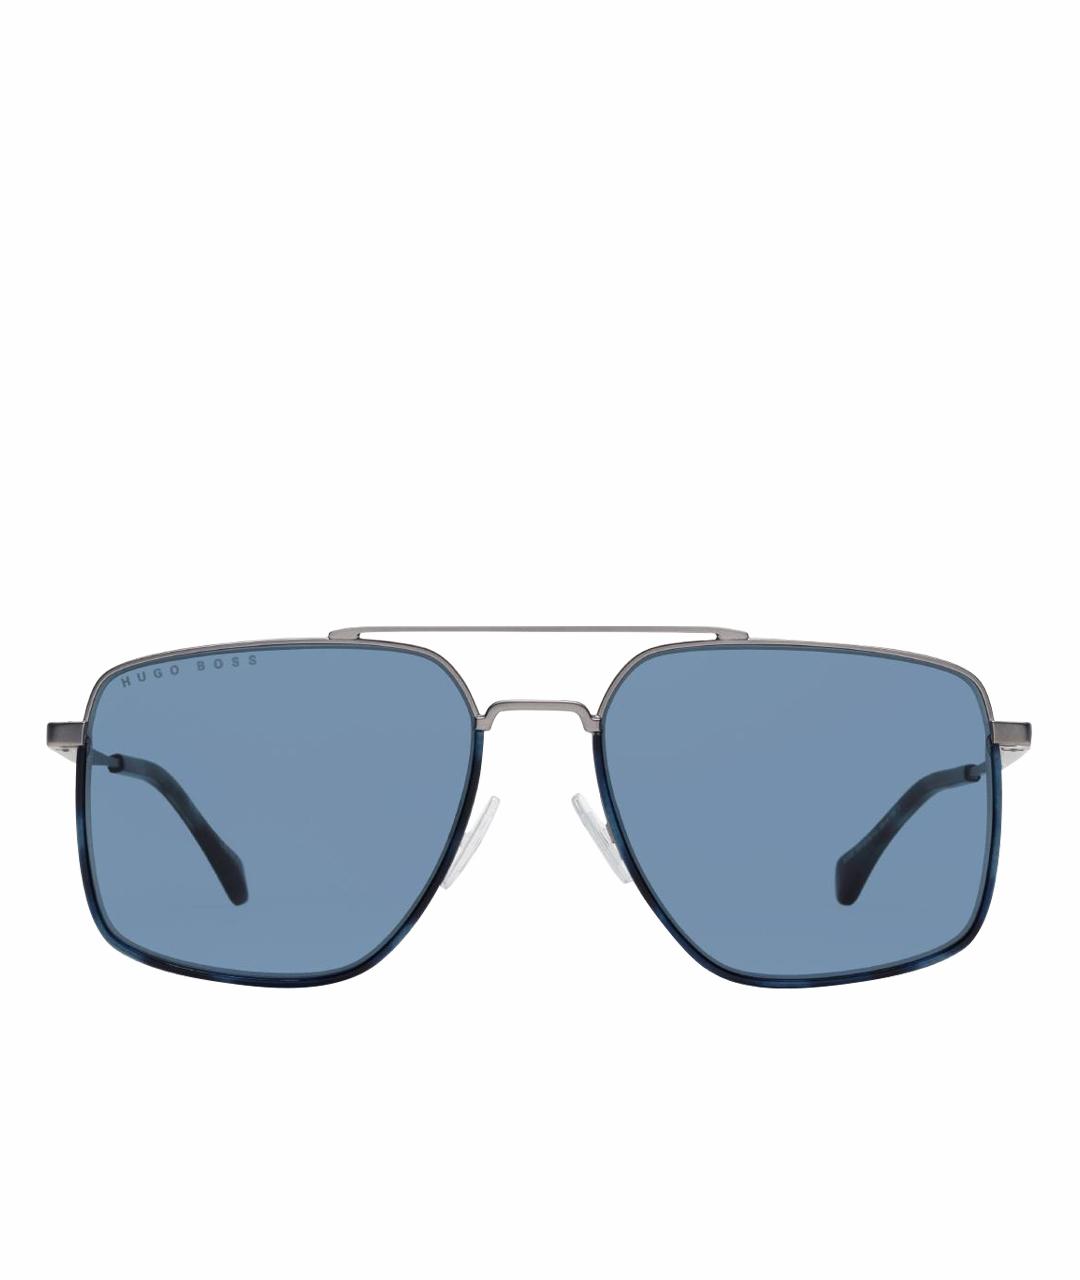 HUGO BOSS Металлические солнцезащитные очки, фото 1